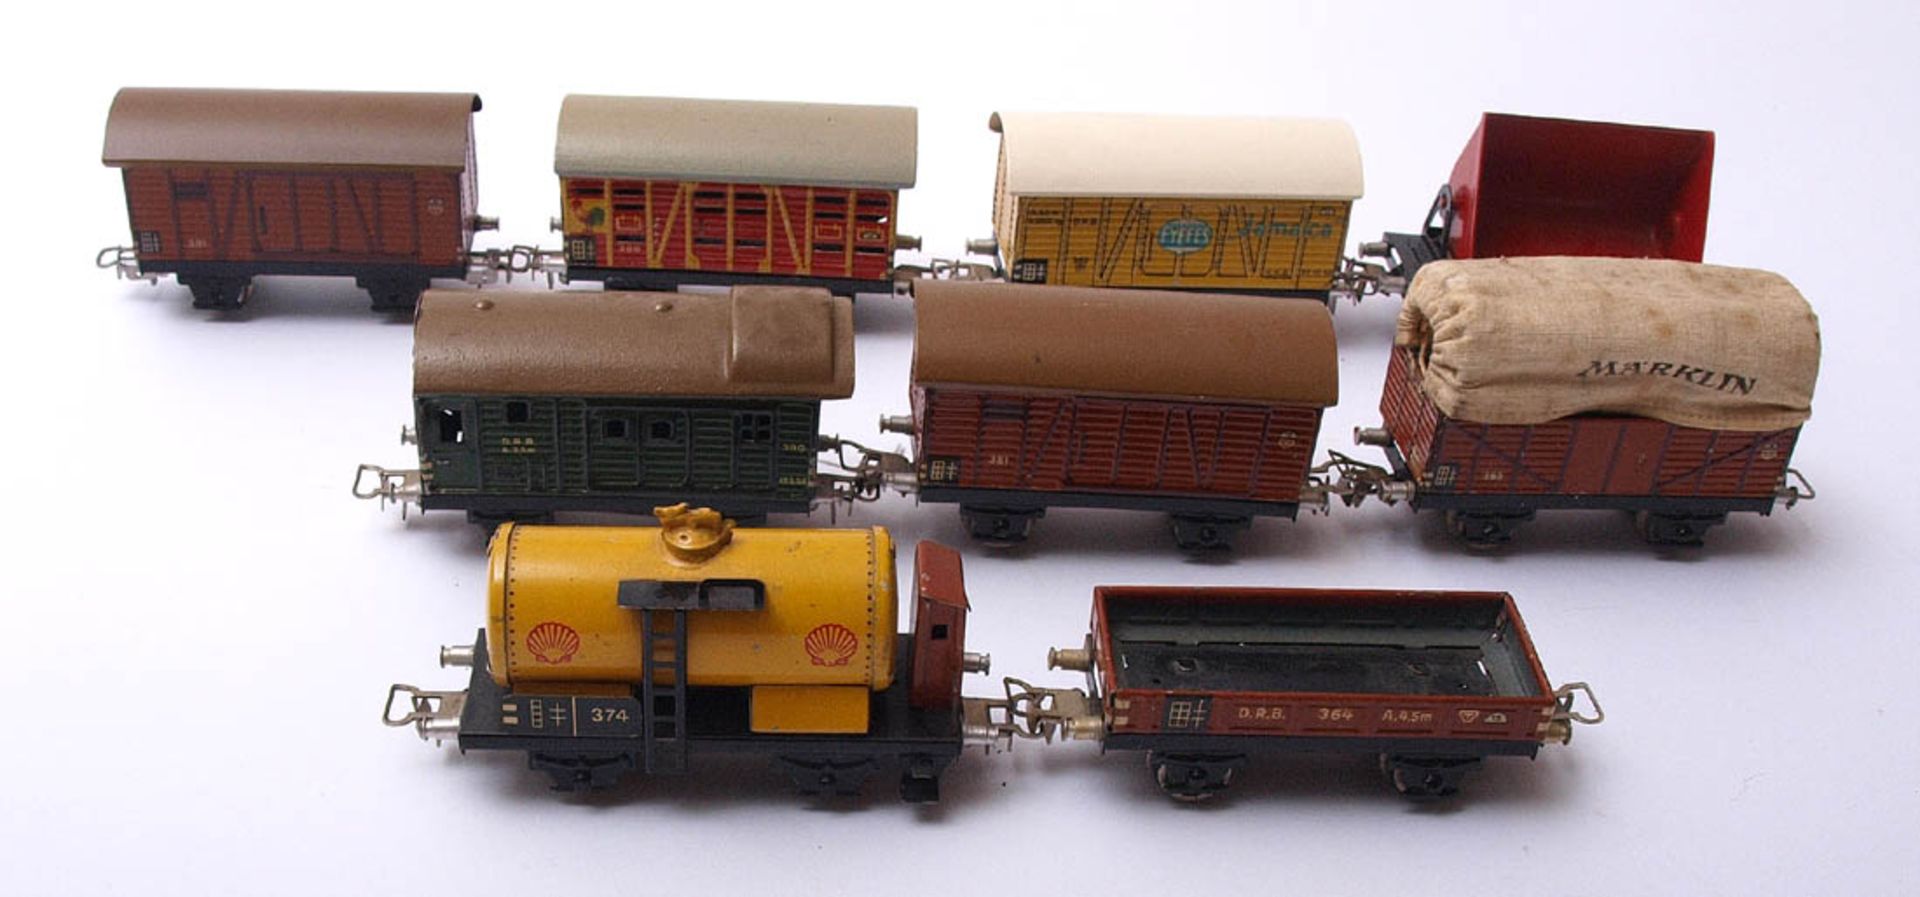 Neun diverse Güterwagen, Märklin, Spur H0 Blech, farbig lackiert.